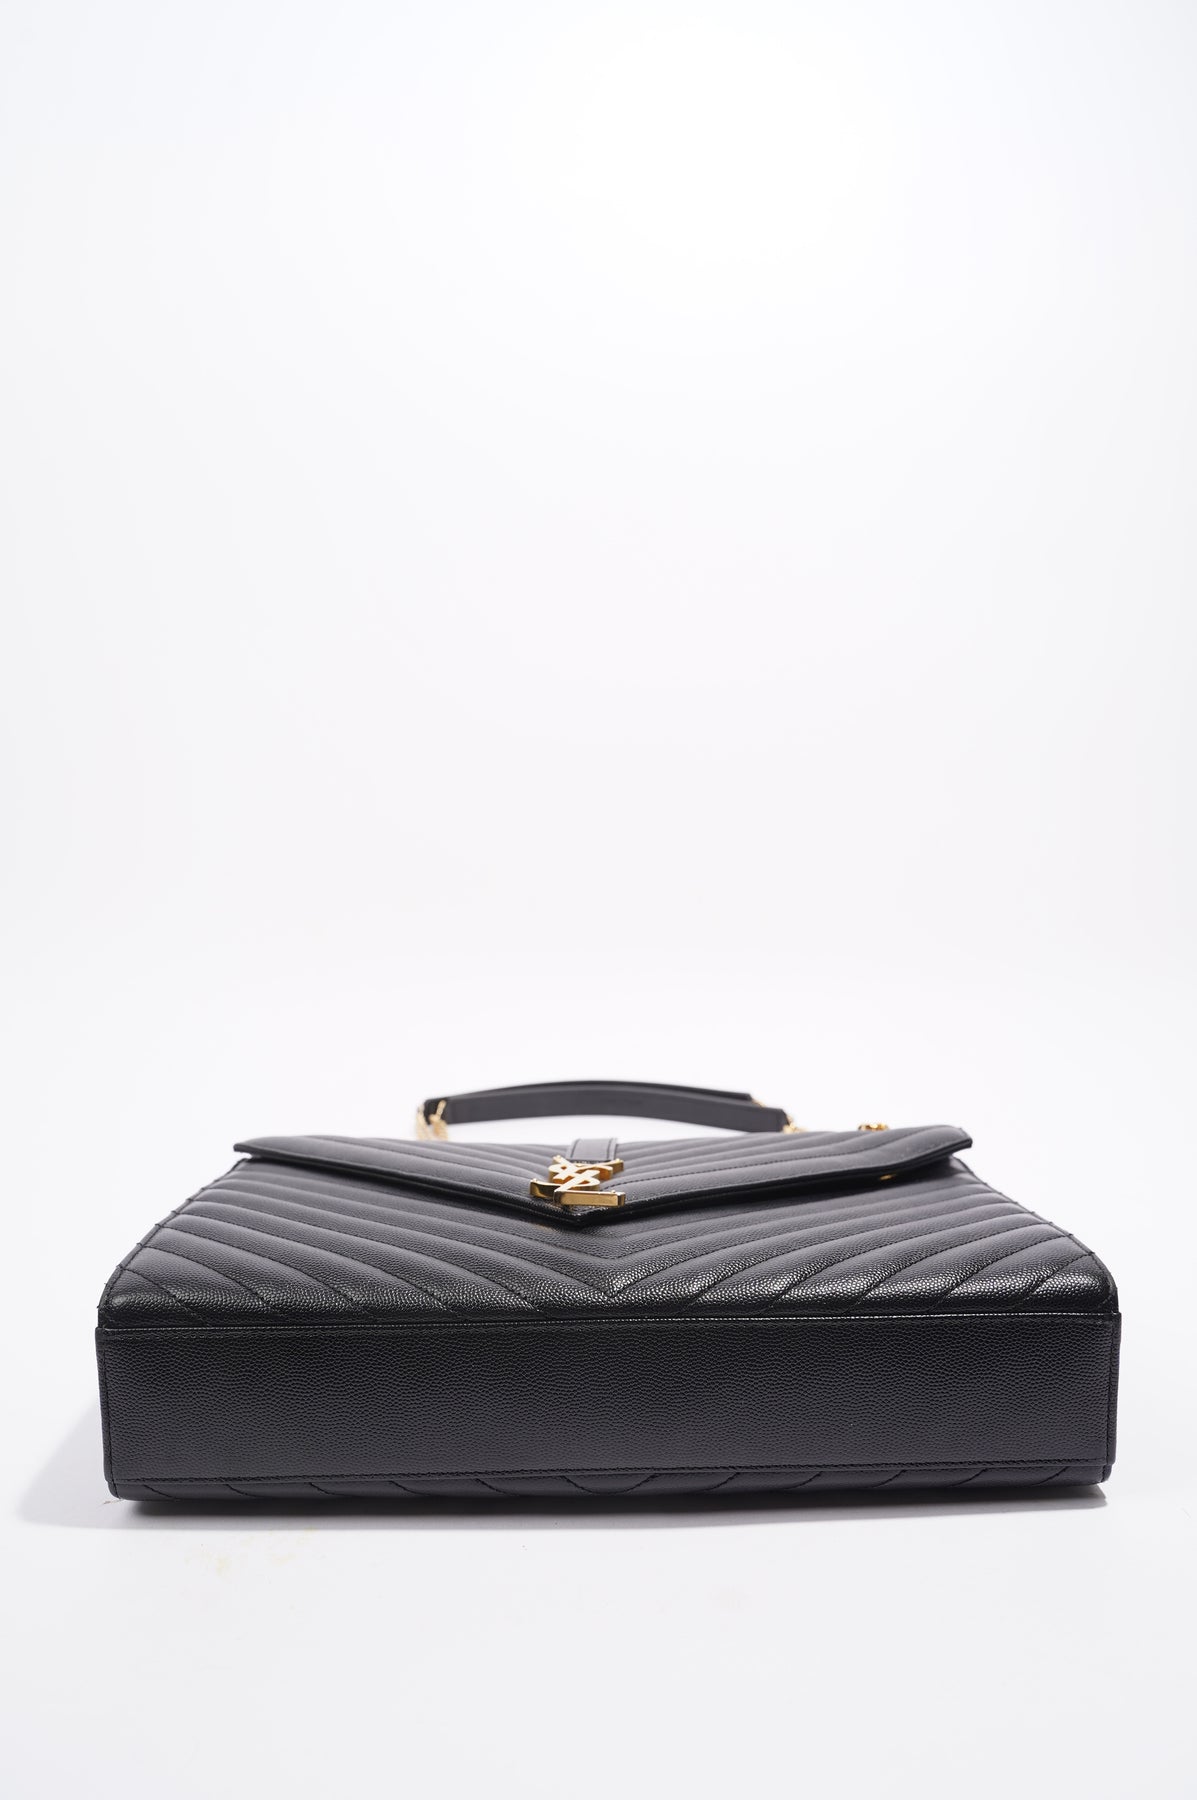 Envelope leather handbag Saint Laurent Black in Leather - 21160747